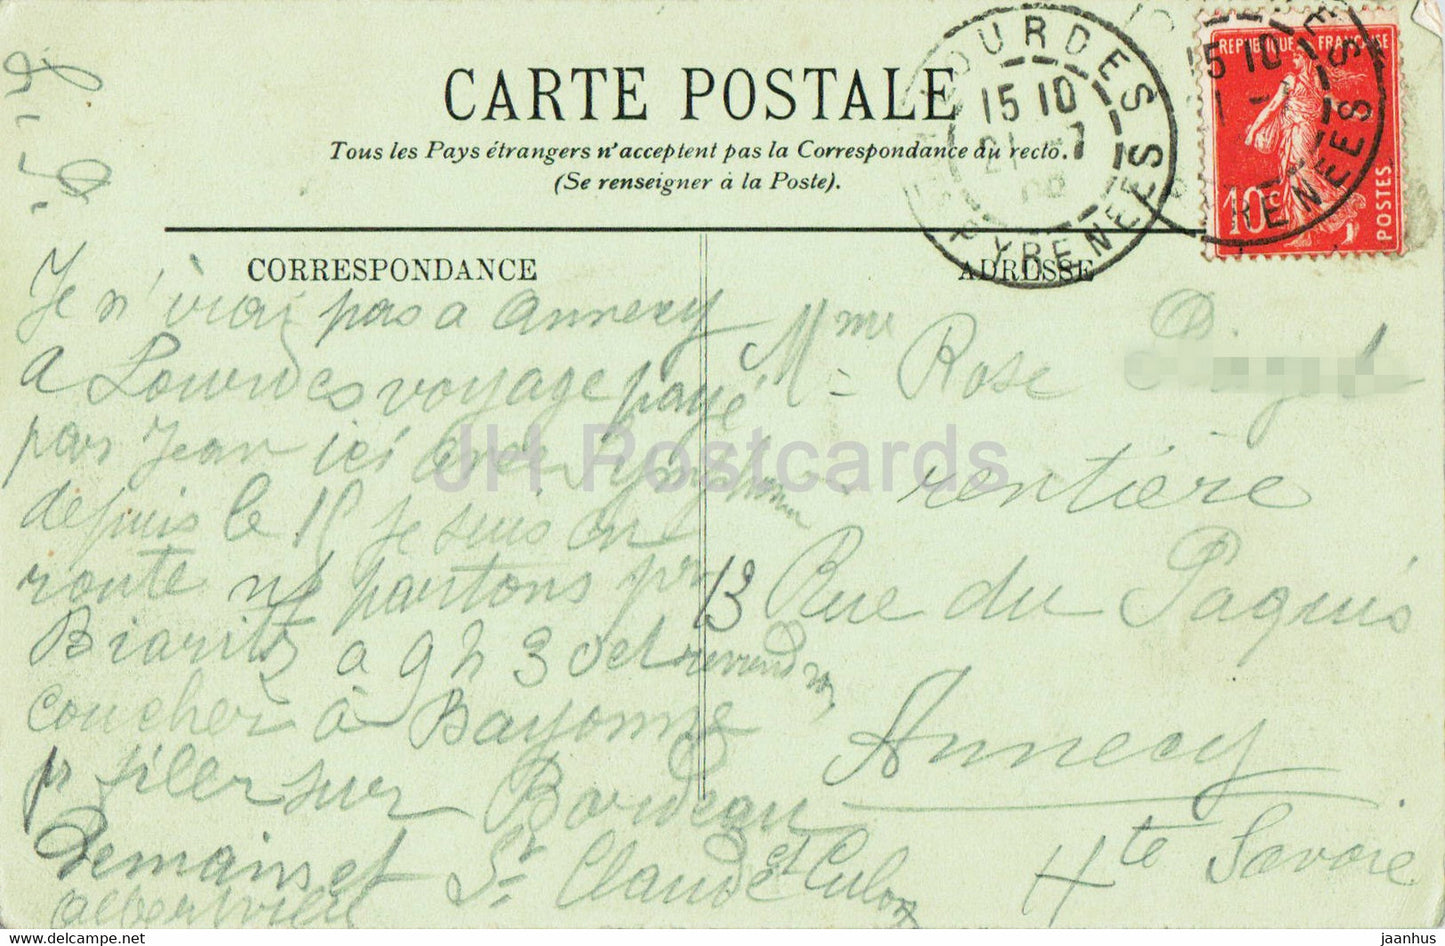 Lourdes - Souvenir du Jubile de Bernadette - 1858-1908 - old postcard - 1908 - France - used